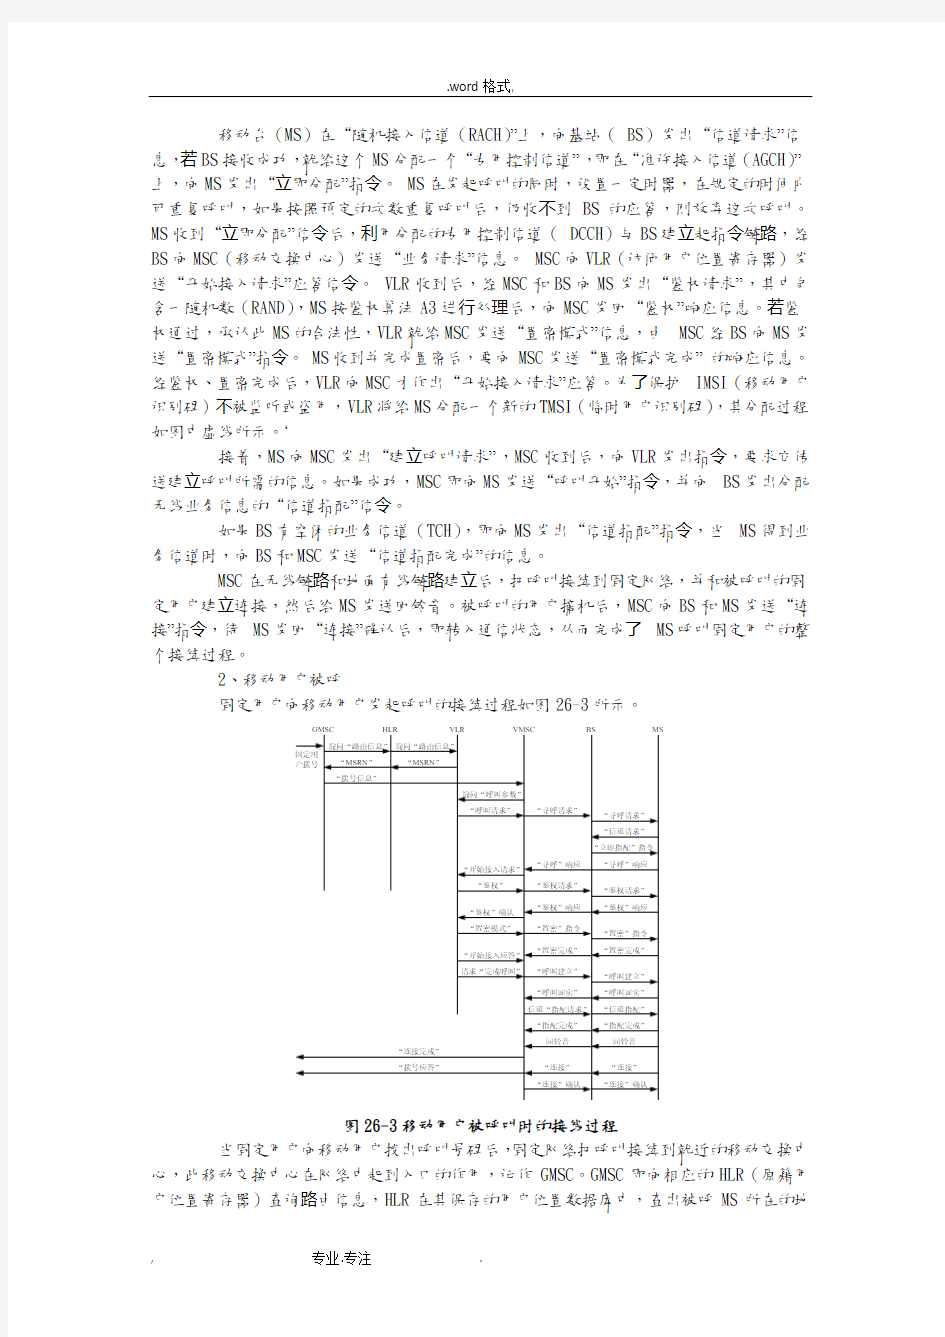 湘潭大学移动通信实验报告实验5_GSM与GPRS移动台主呼与被呼叫过程实验